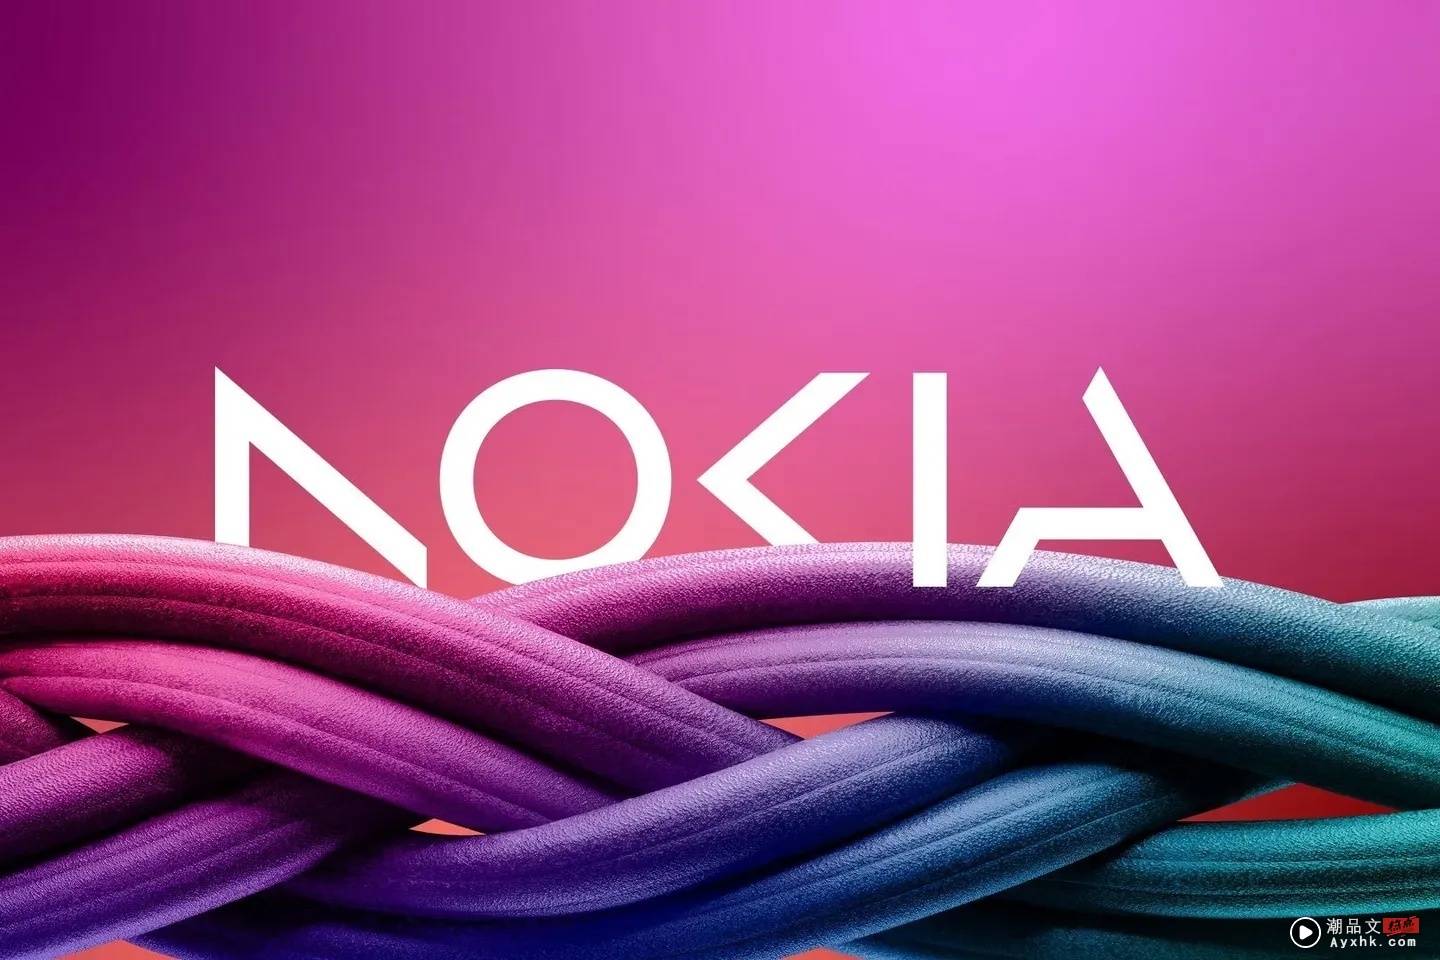 Nokia 换新 Logo 郑重声明不再是手机品牌！将近 160 年的 Nokia 品牌 Logo 蜕变史快速整理 数码科技 图1张